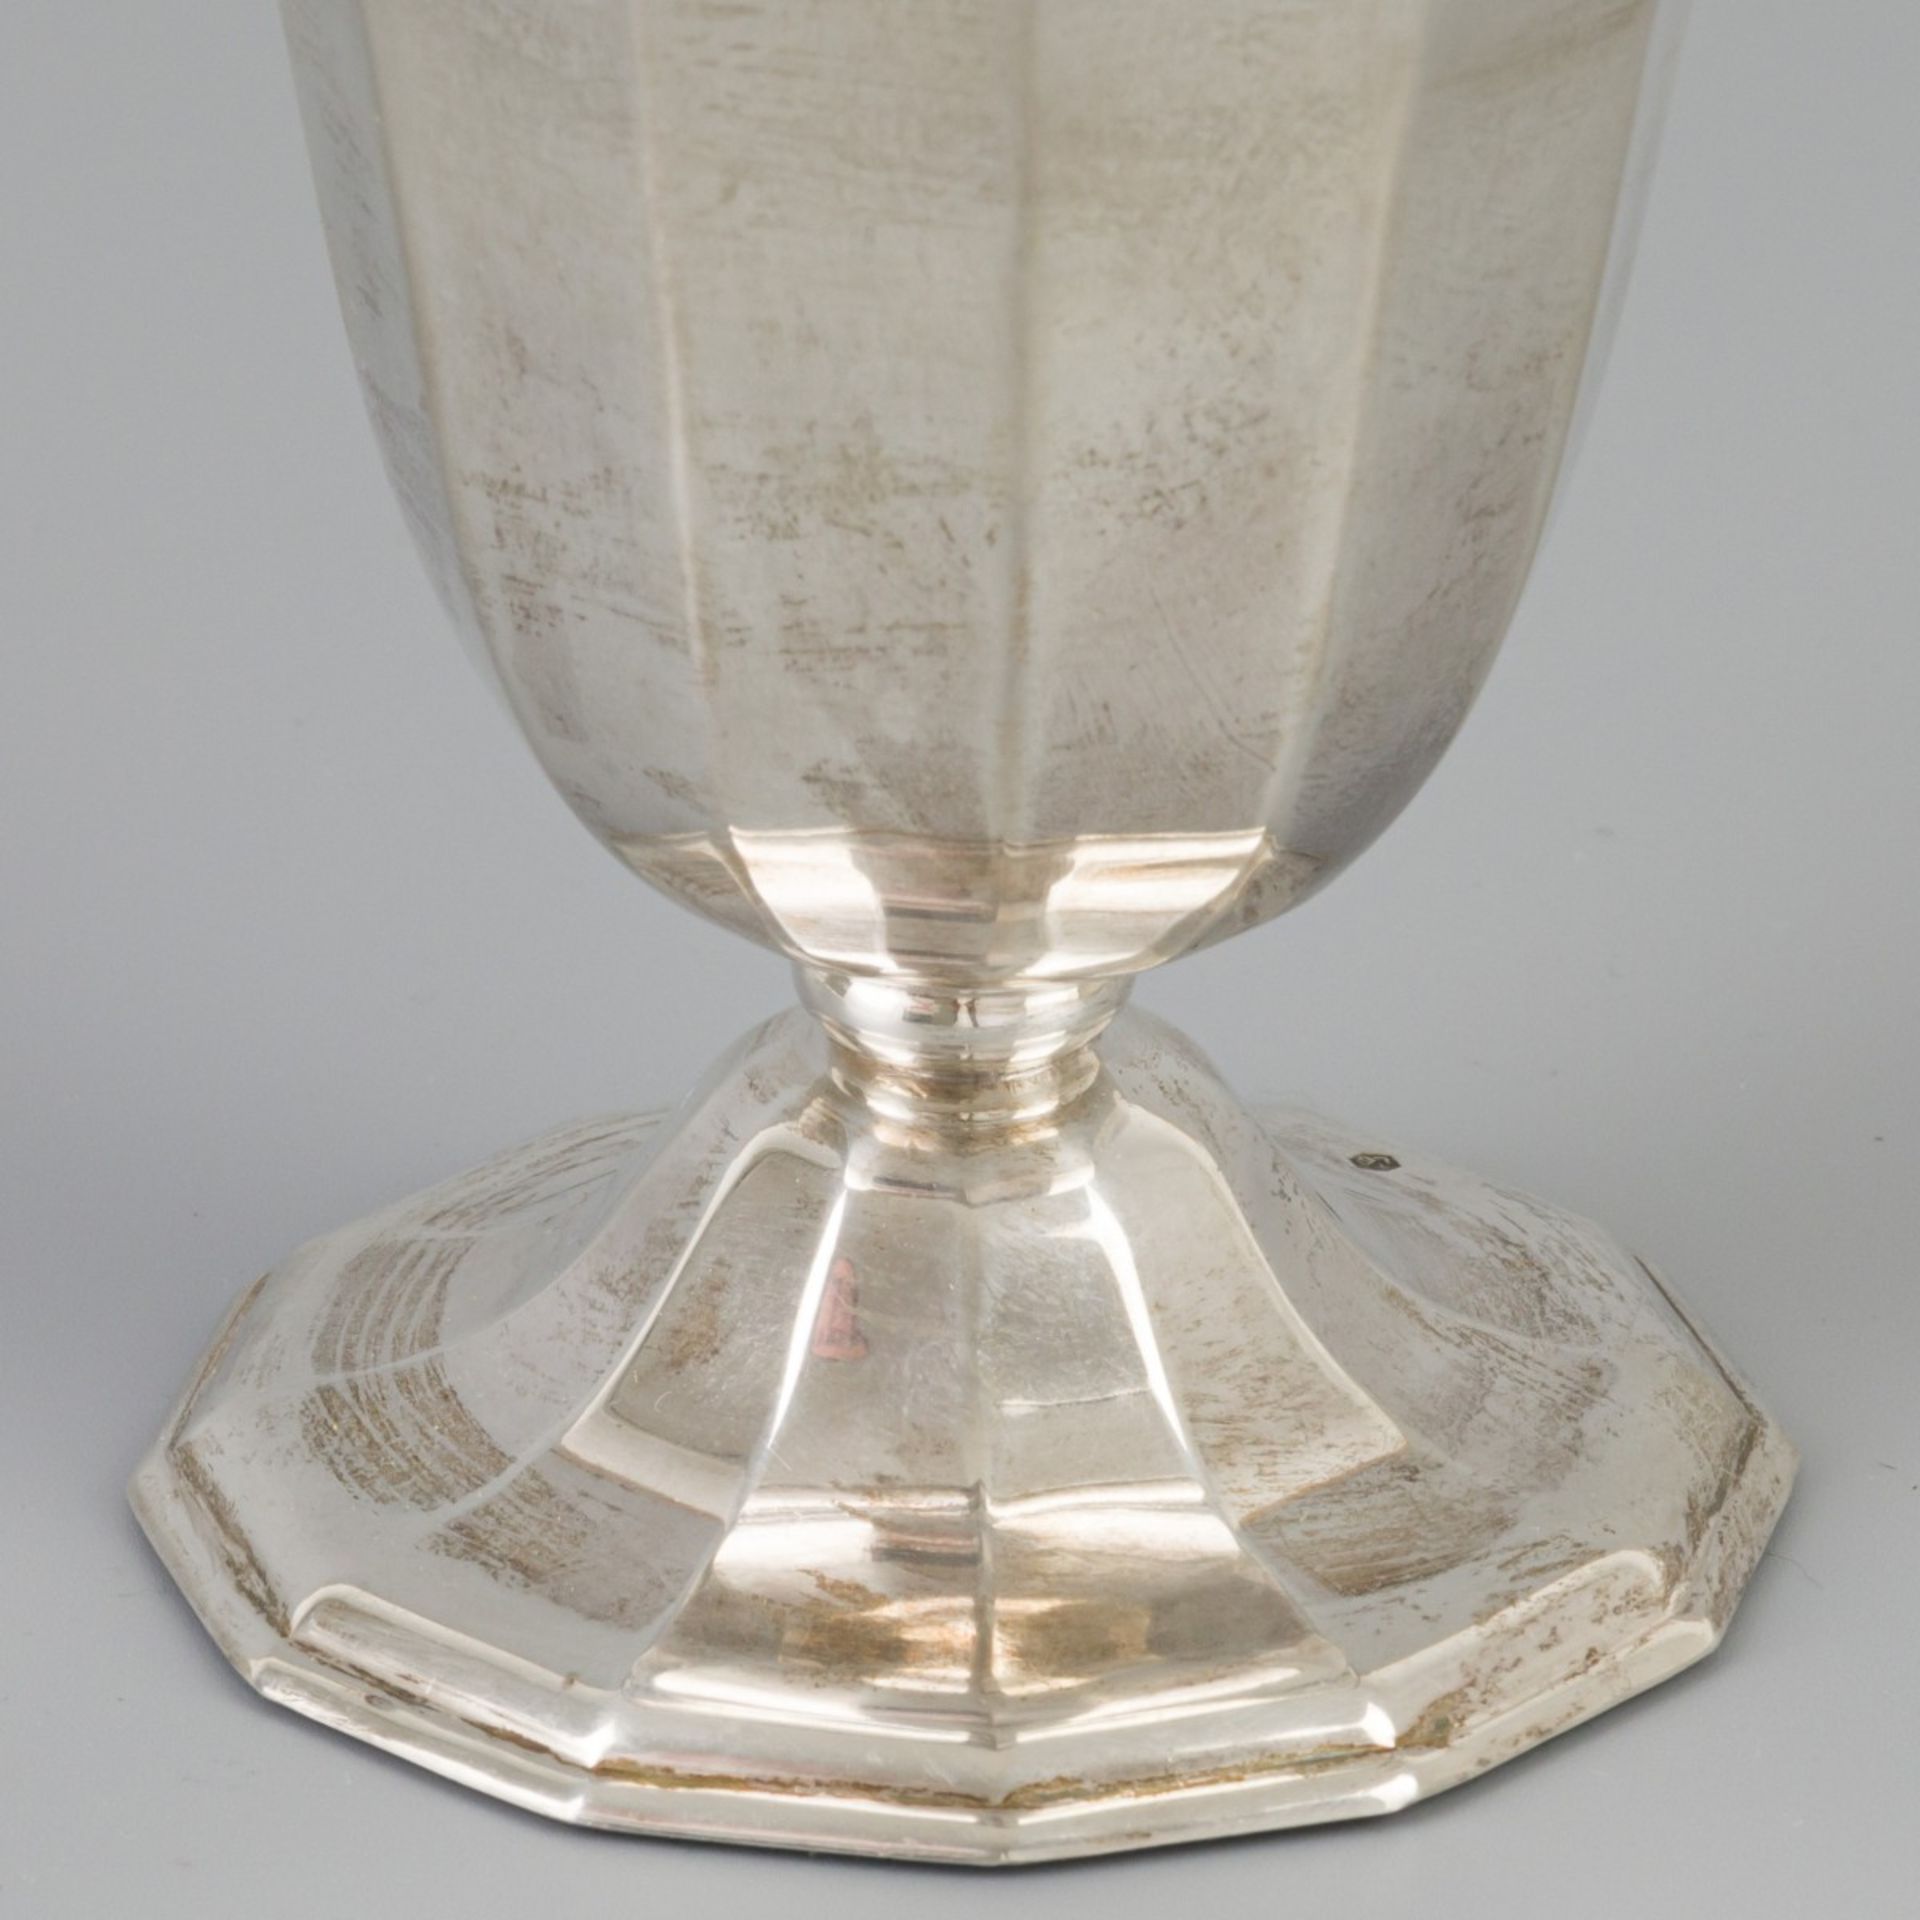 Flower vase silver. - Image 2 of 5